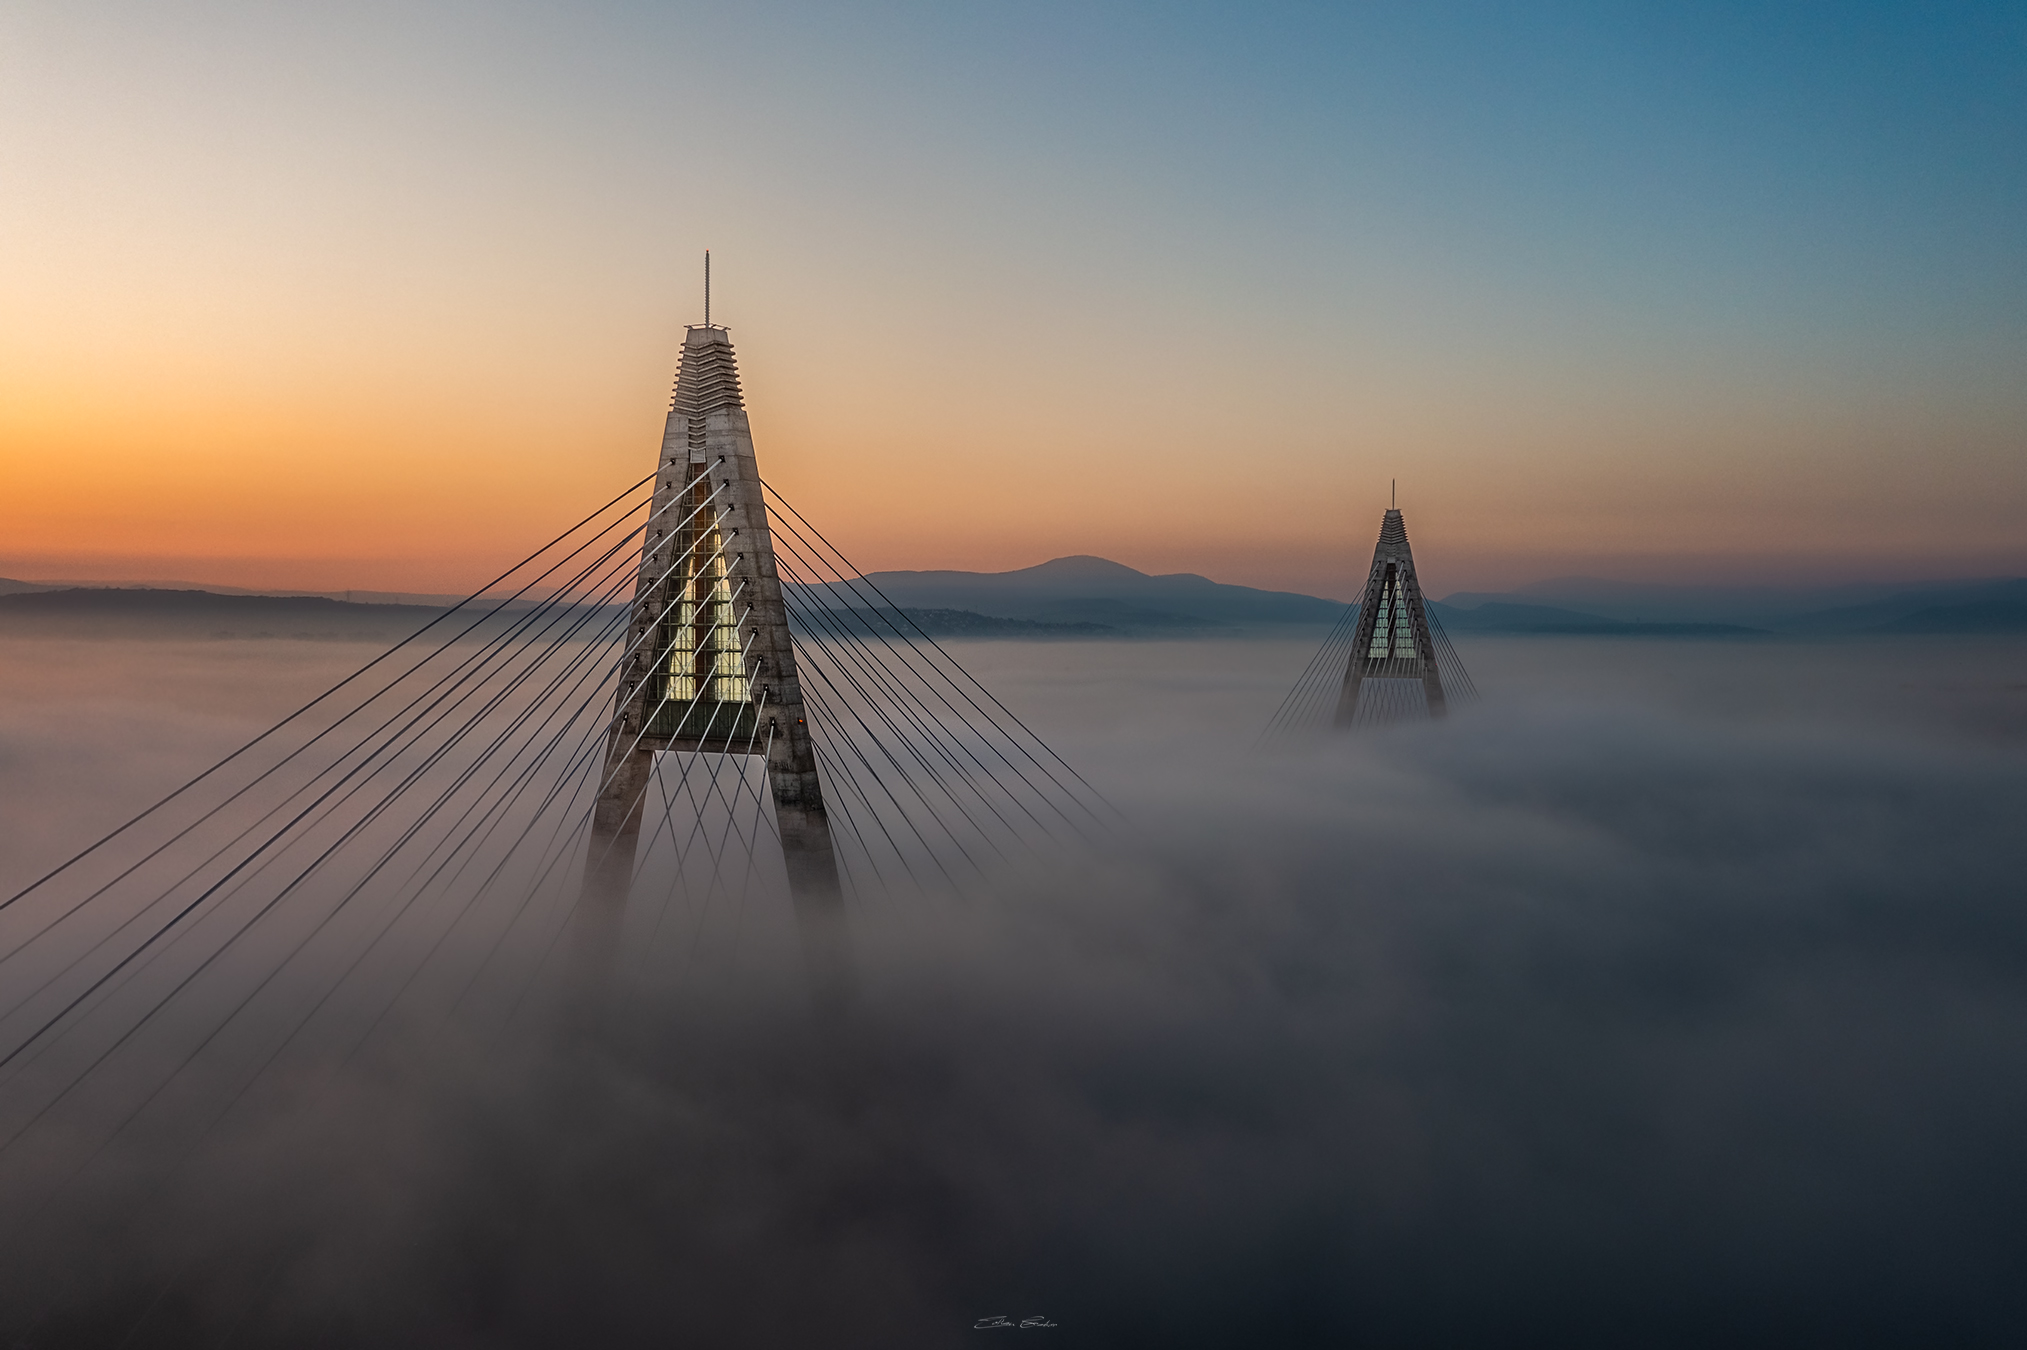 Ilyen a Megyeri híd a sejtelmes őszi ködben Gábor Zoltán lenyűgöző fotóin